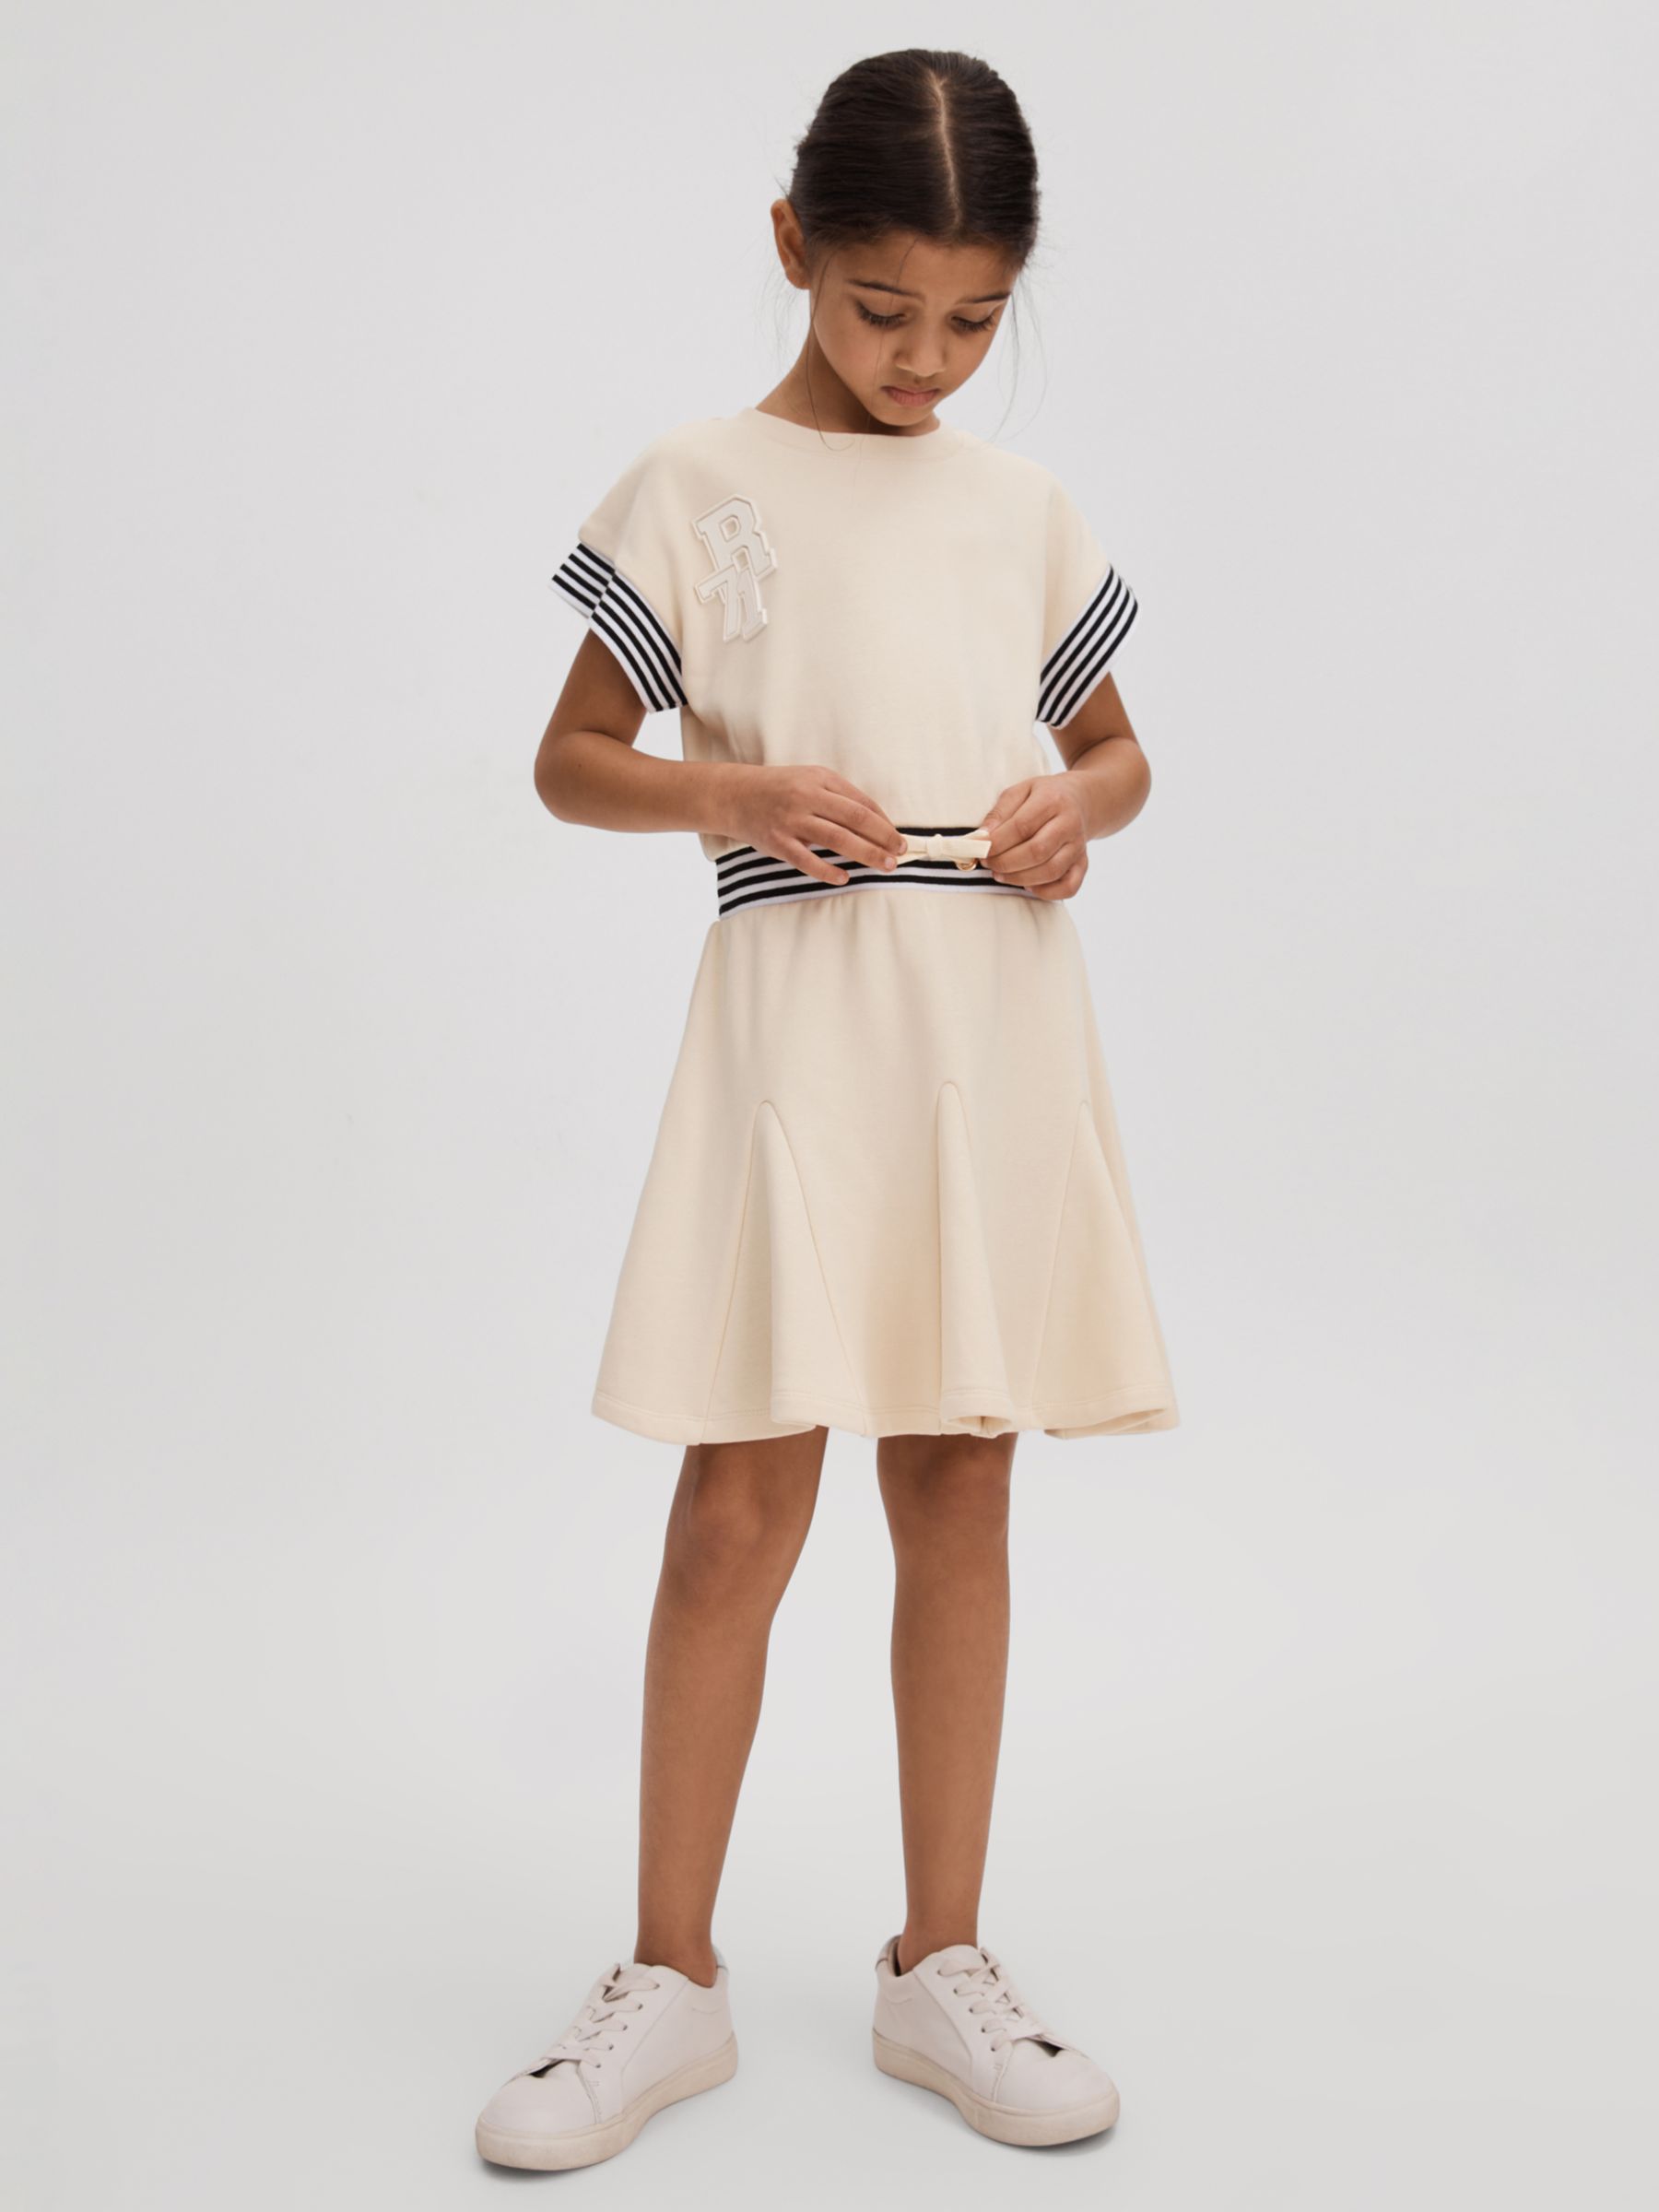 Reiss Kids' Milo Logo Stripe Trim Jersey Dress, Ivory, 4-5 years